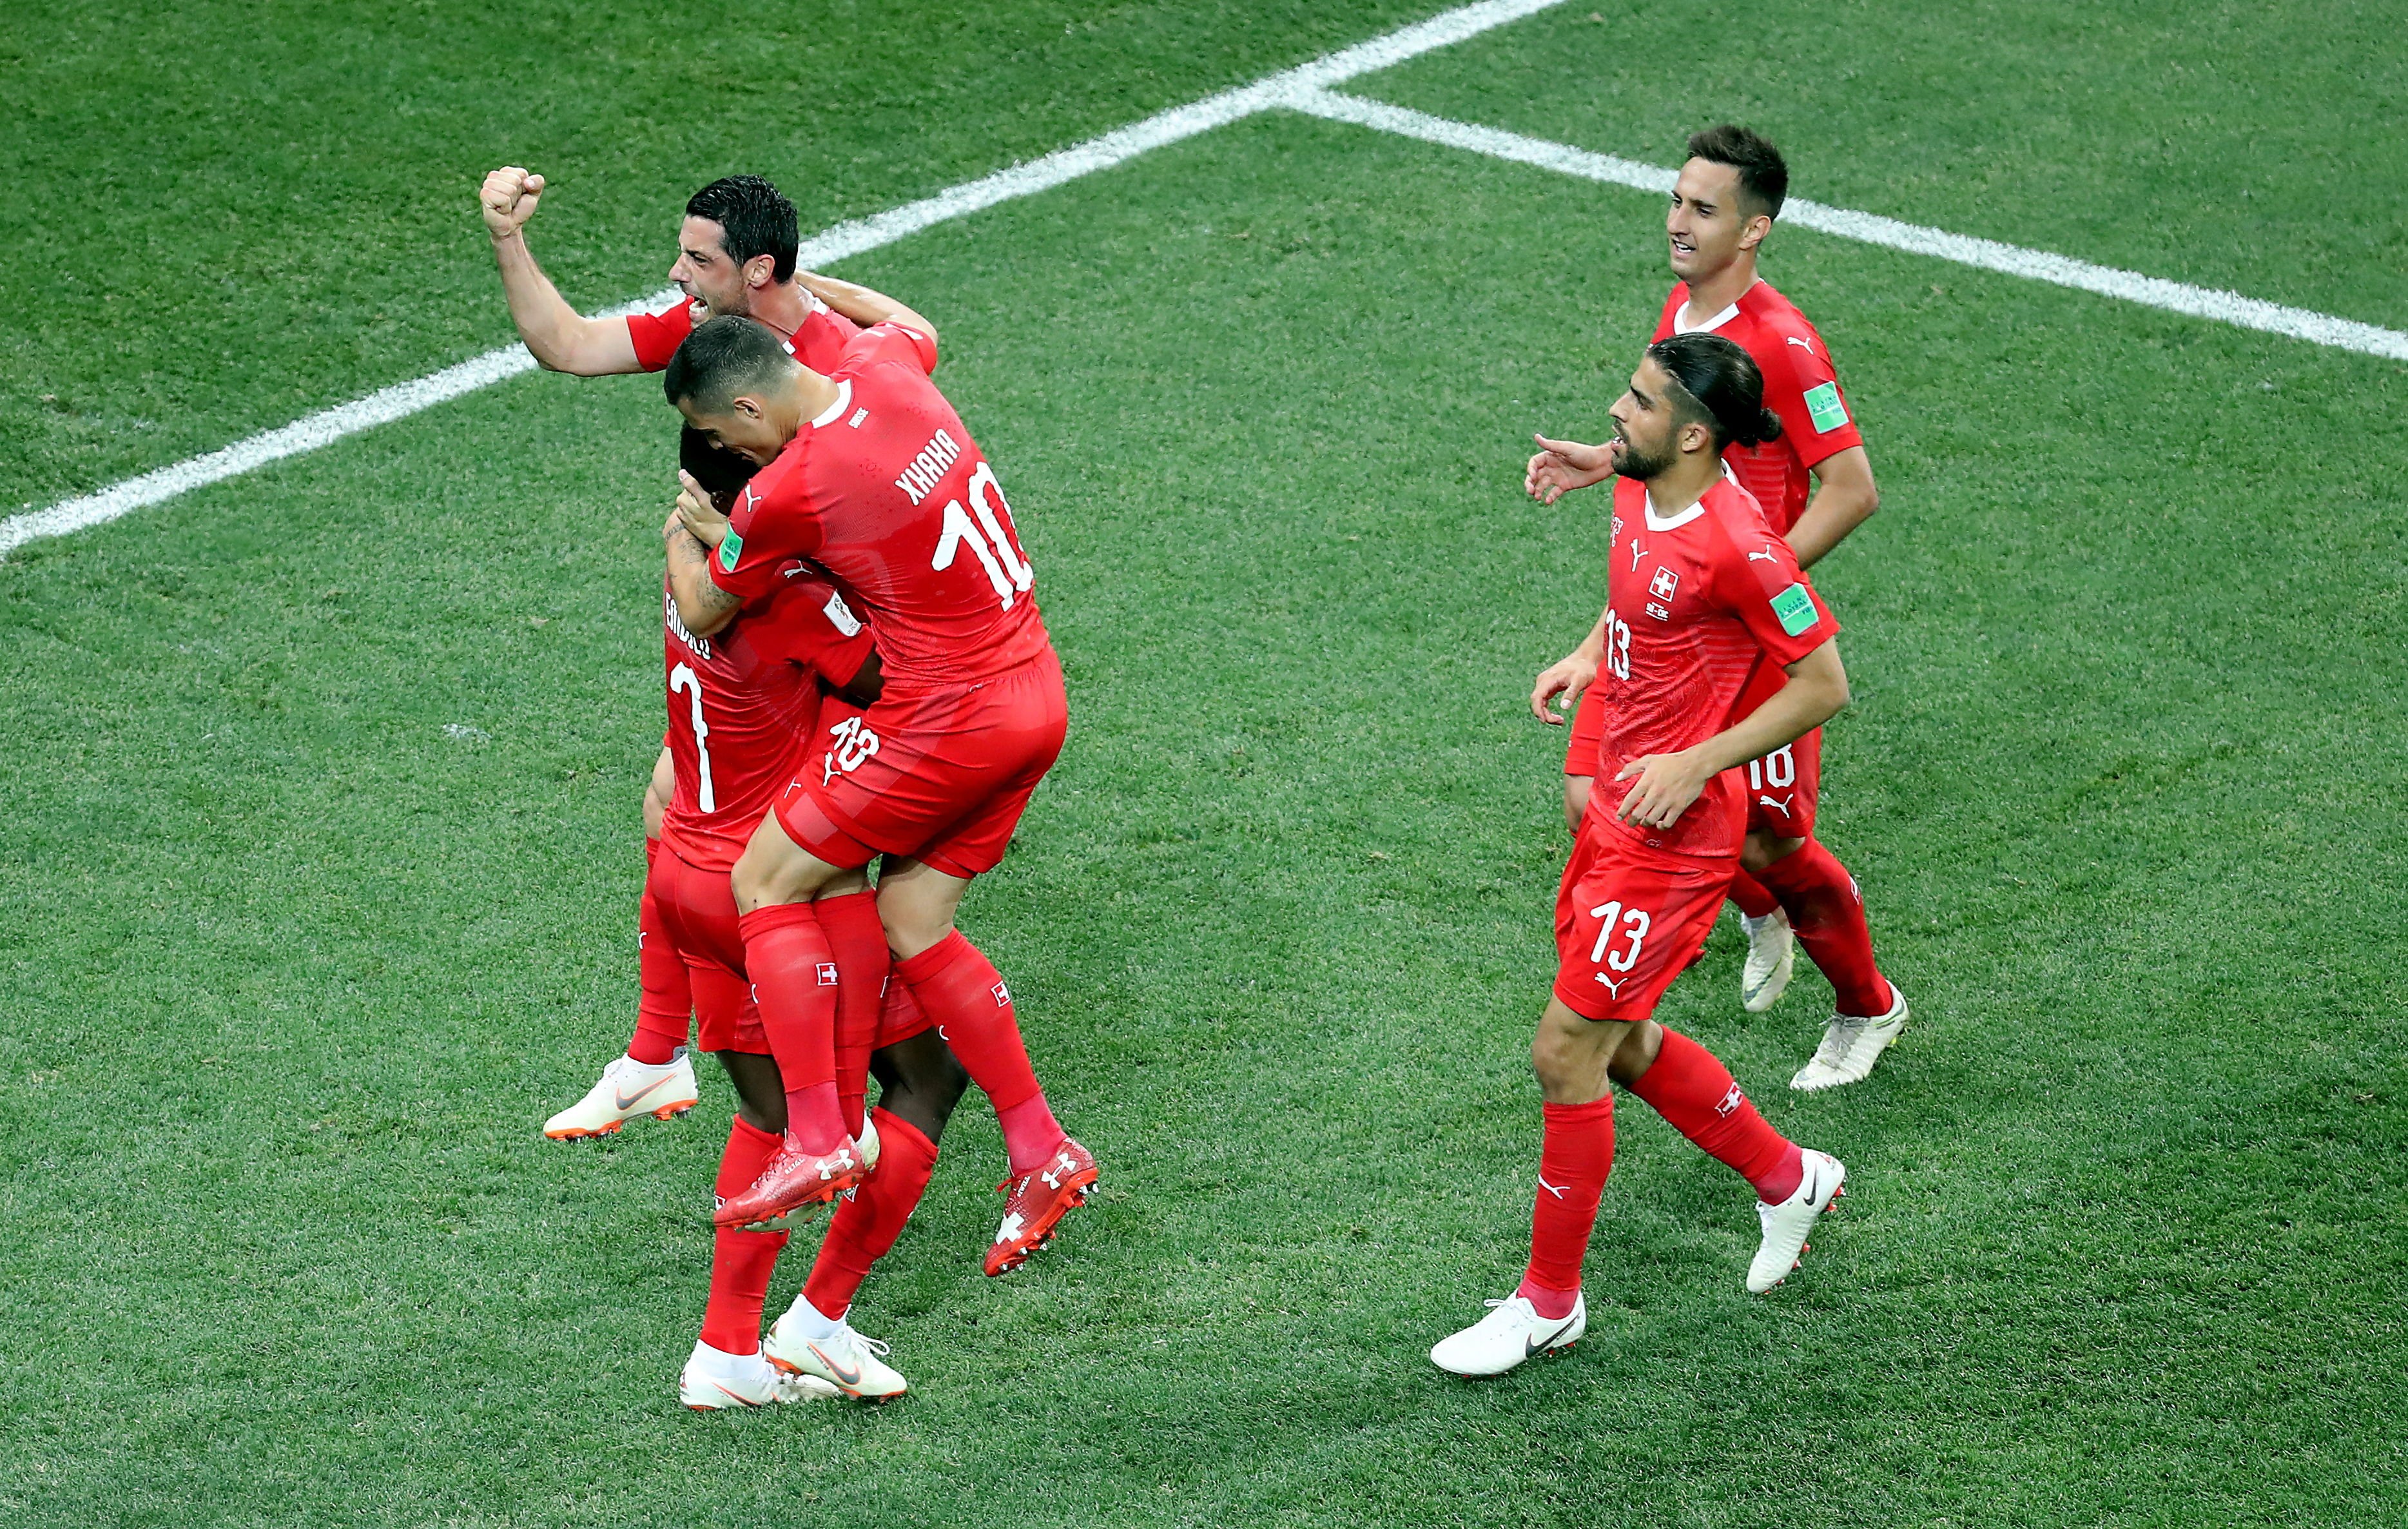 Suïssa s'apunta als vuitens del Mundial (2-2)